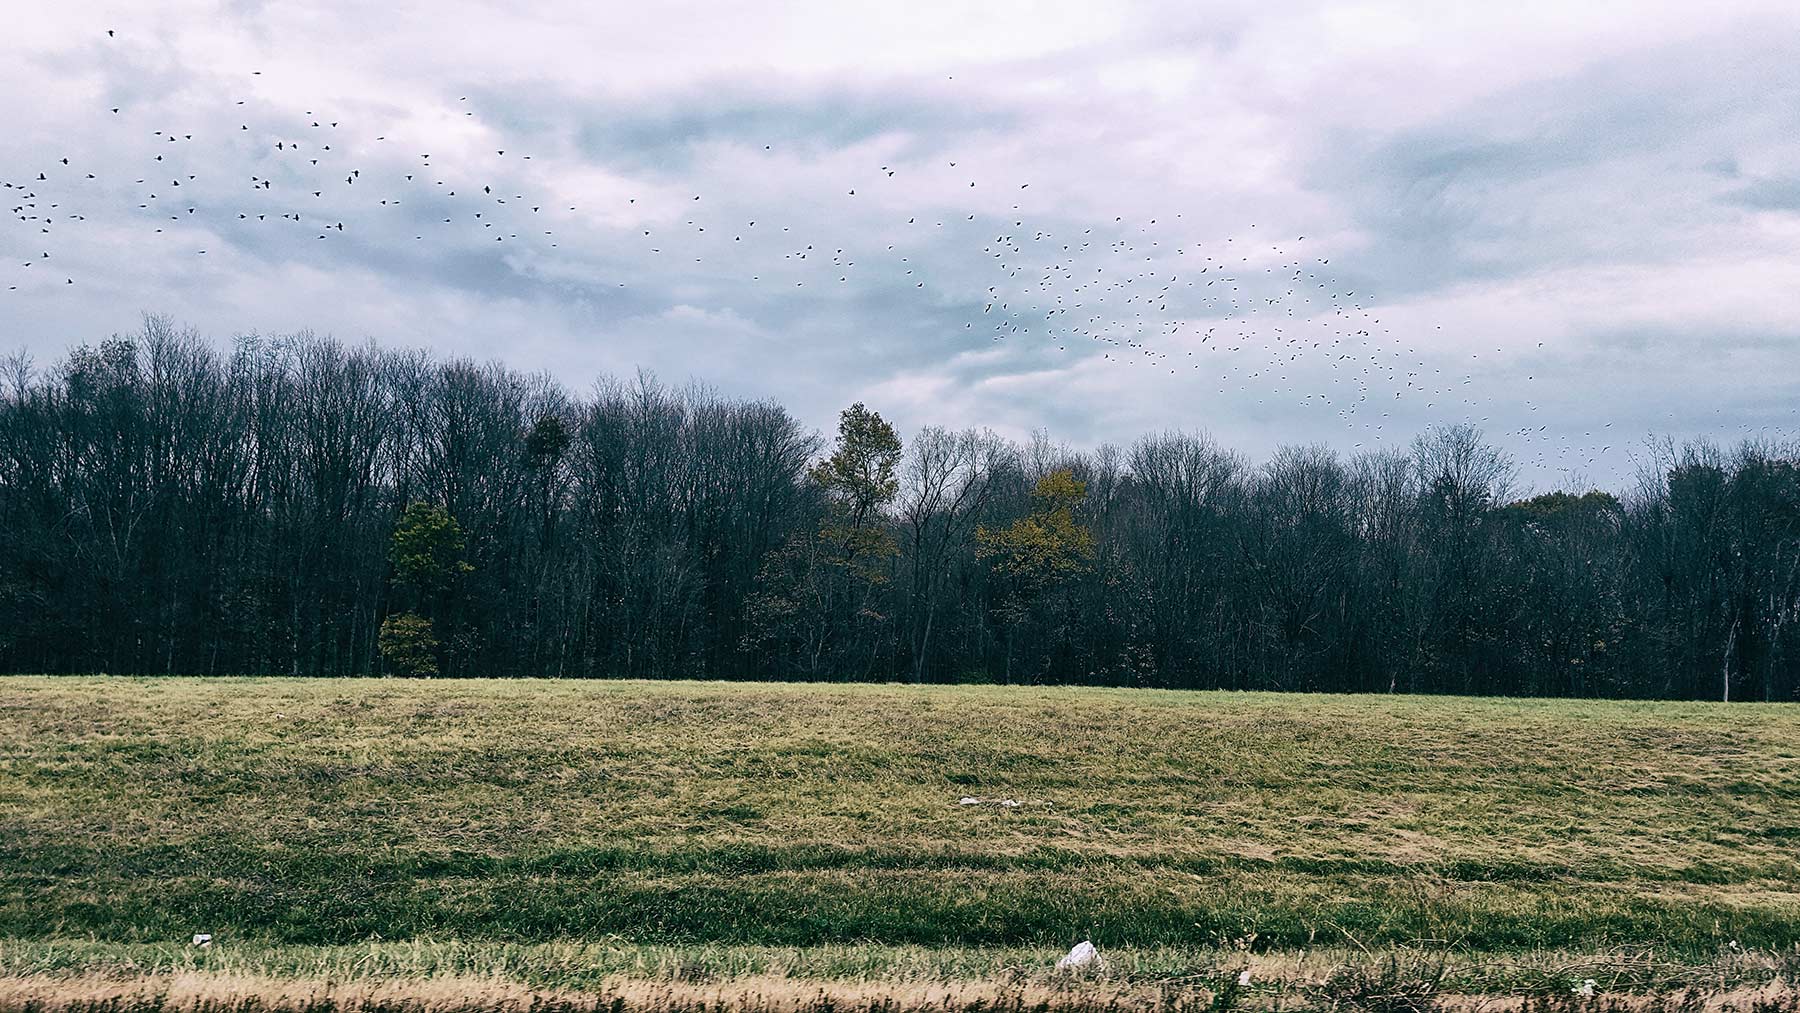 flock of bird ©2016 bret wills